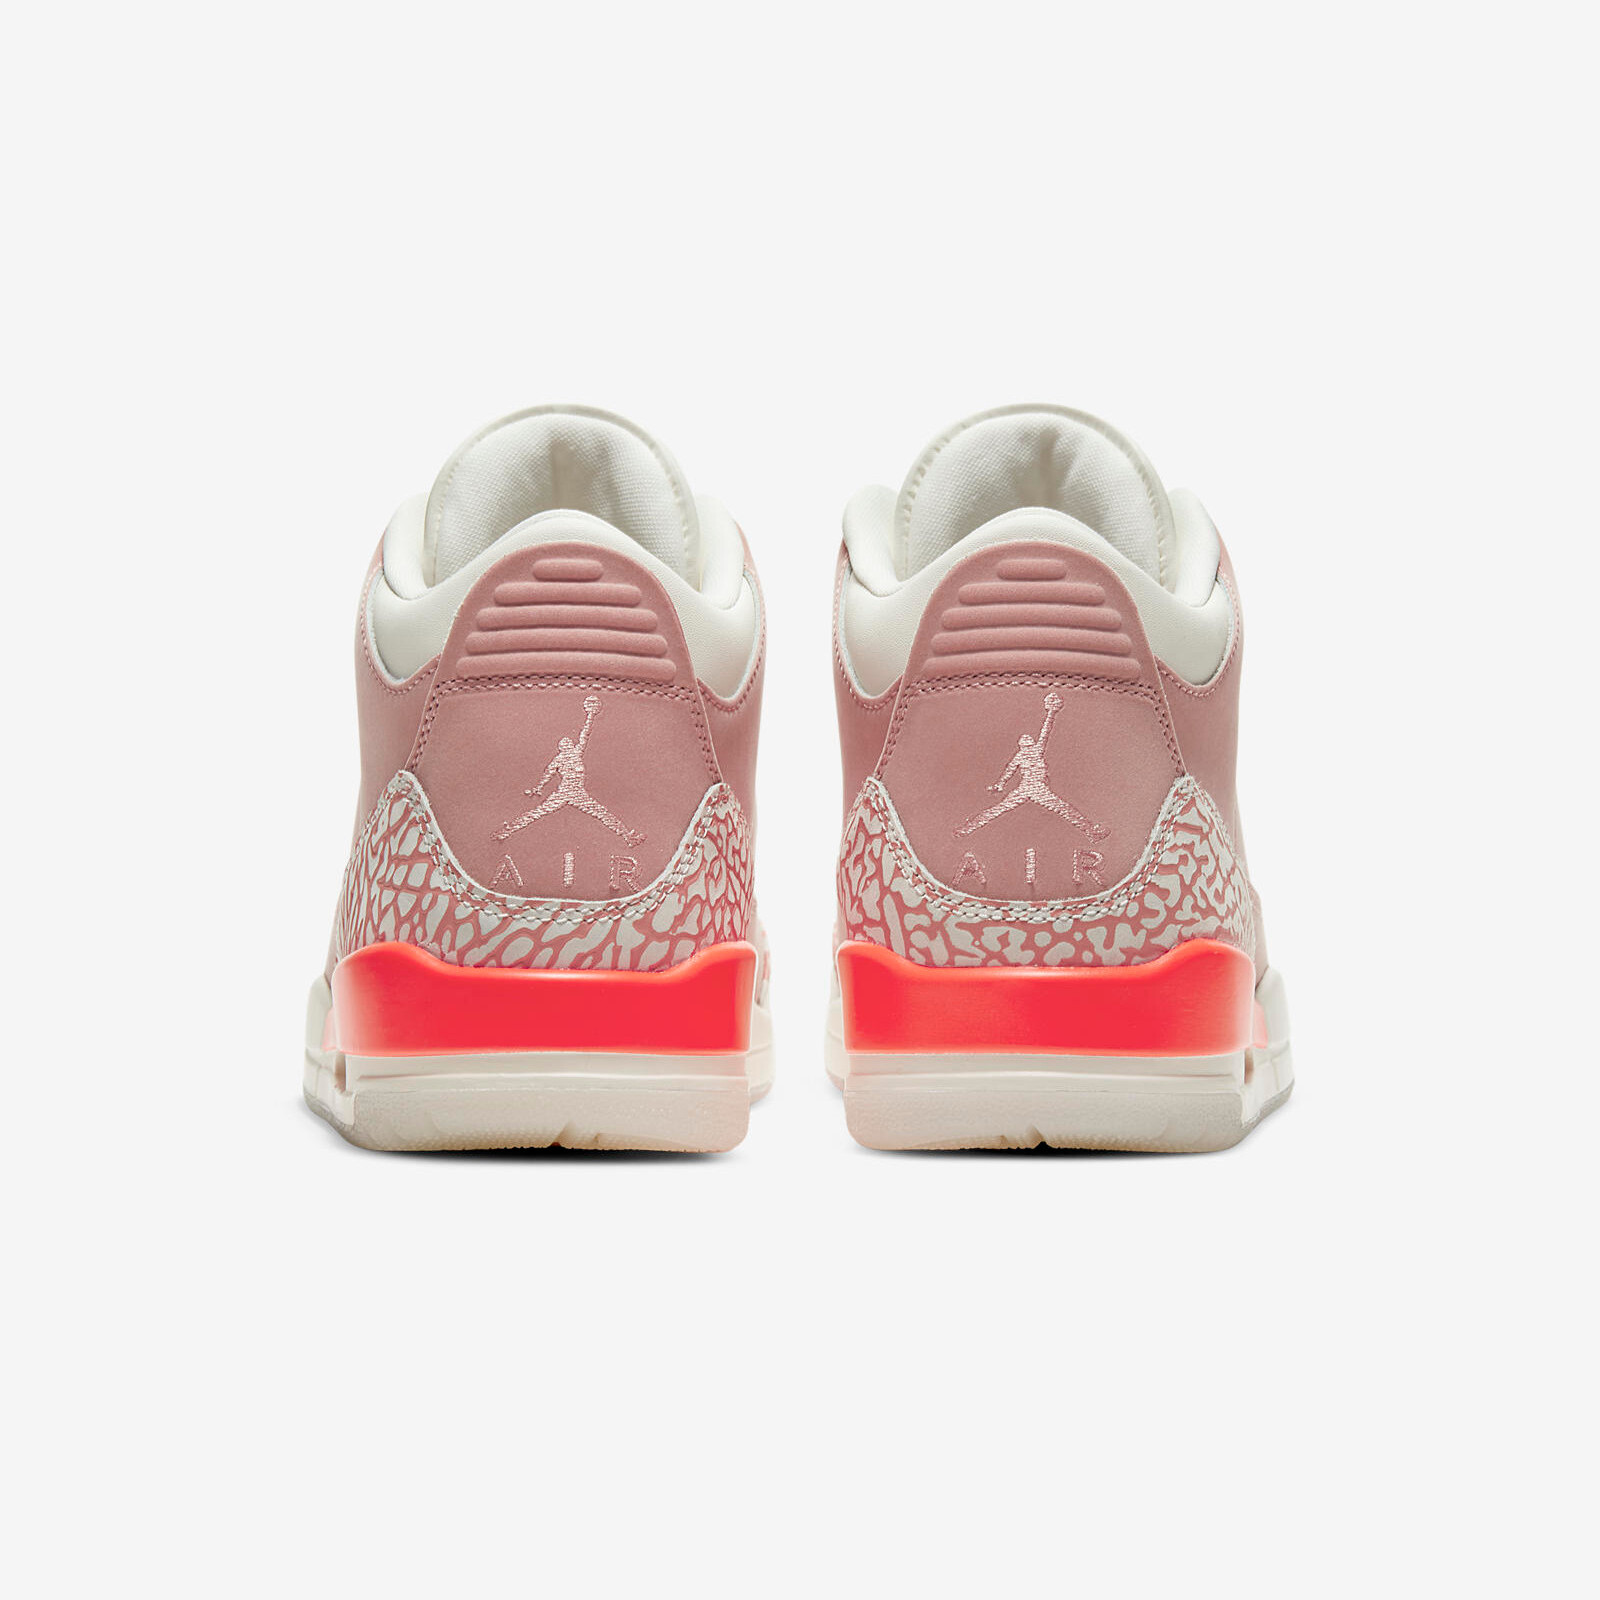 Air Jordan 3 Retro
« Rust Pink »